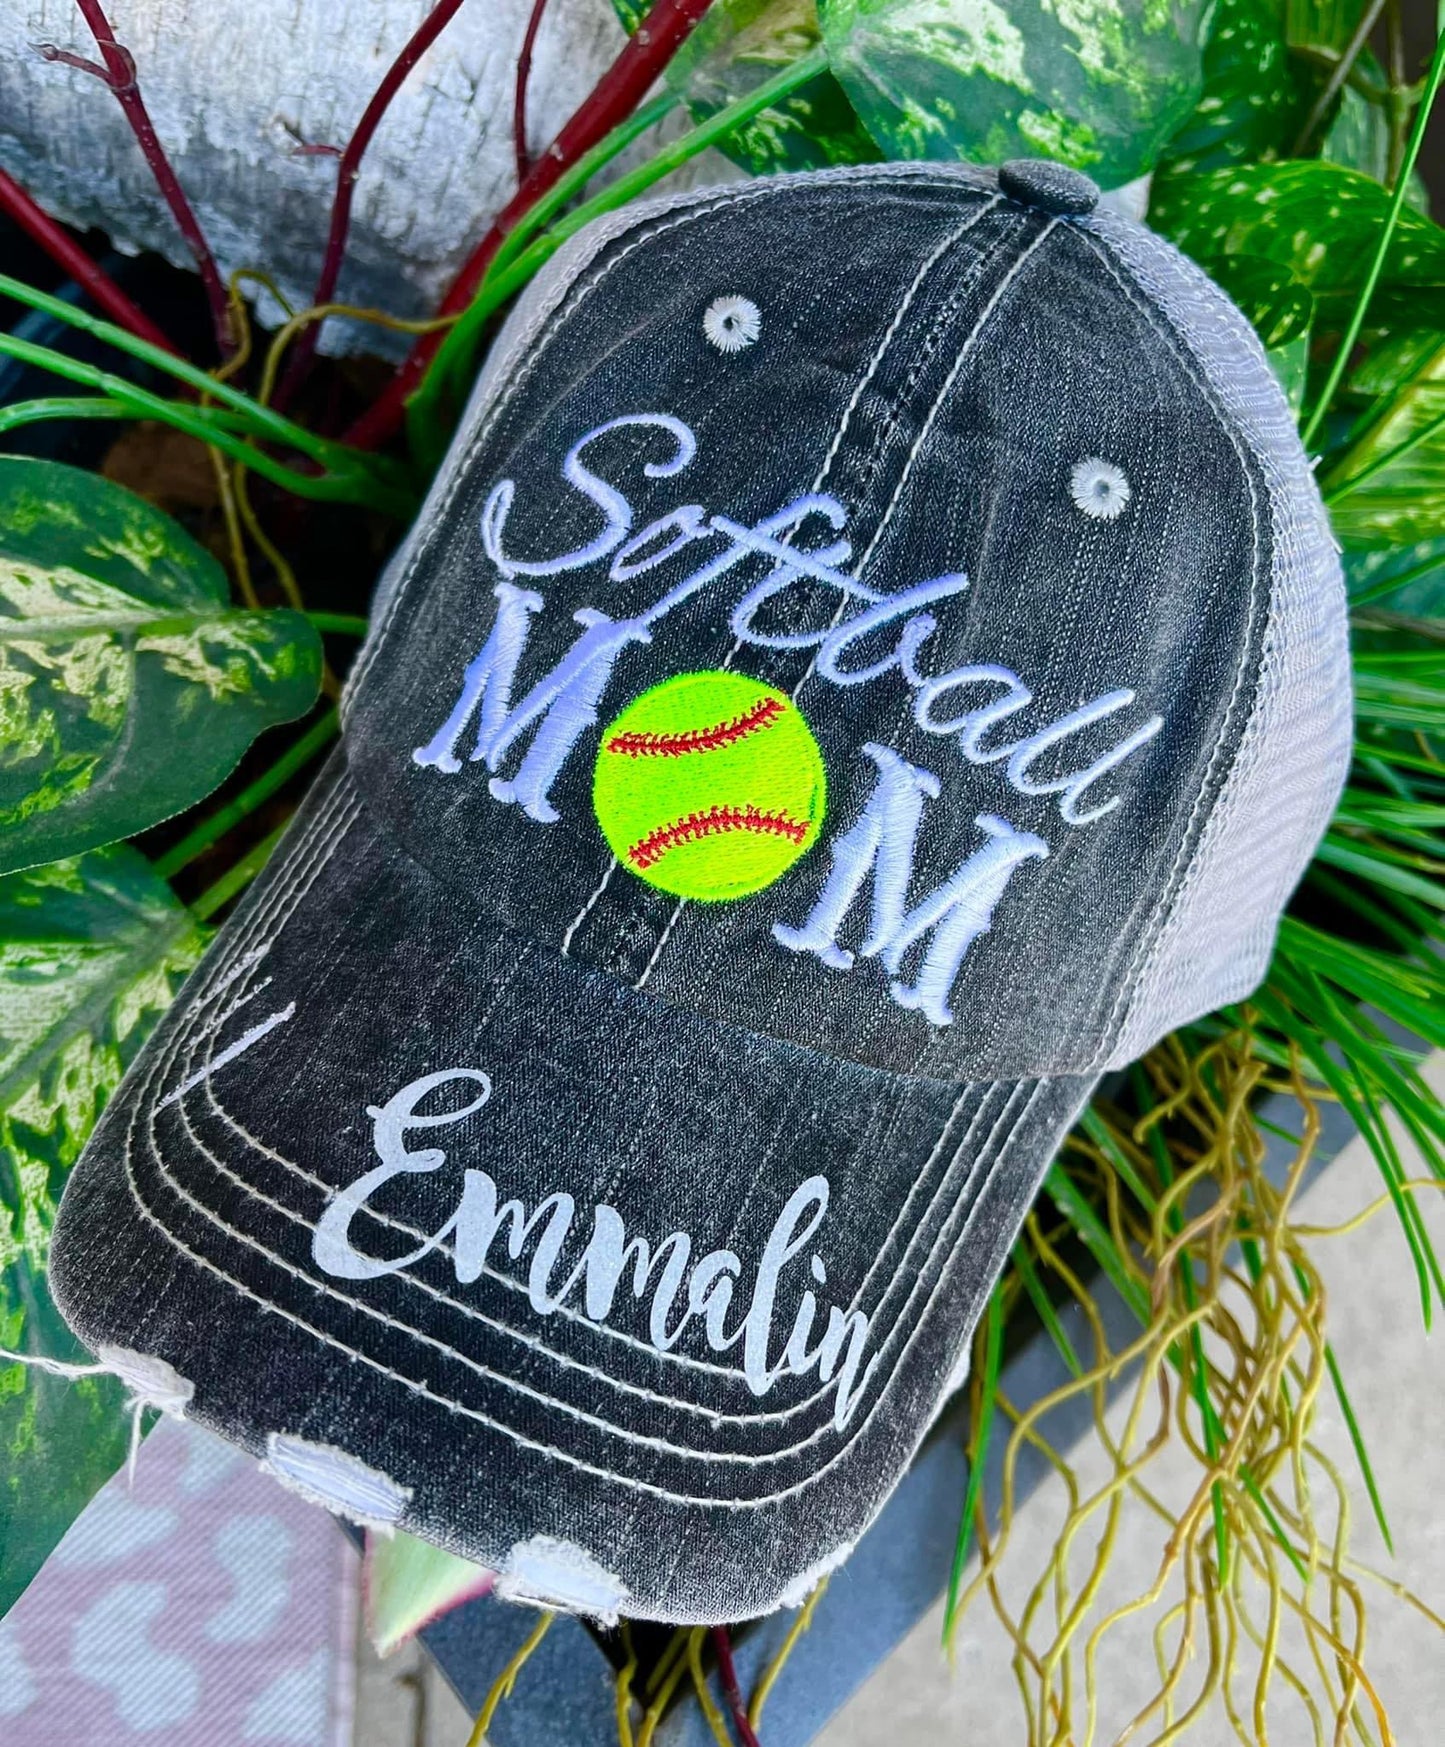 Softball Moms Care